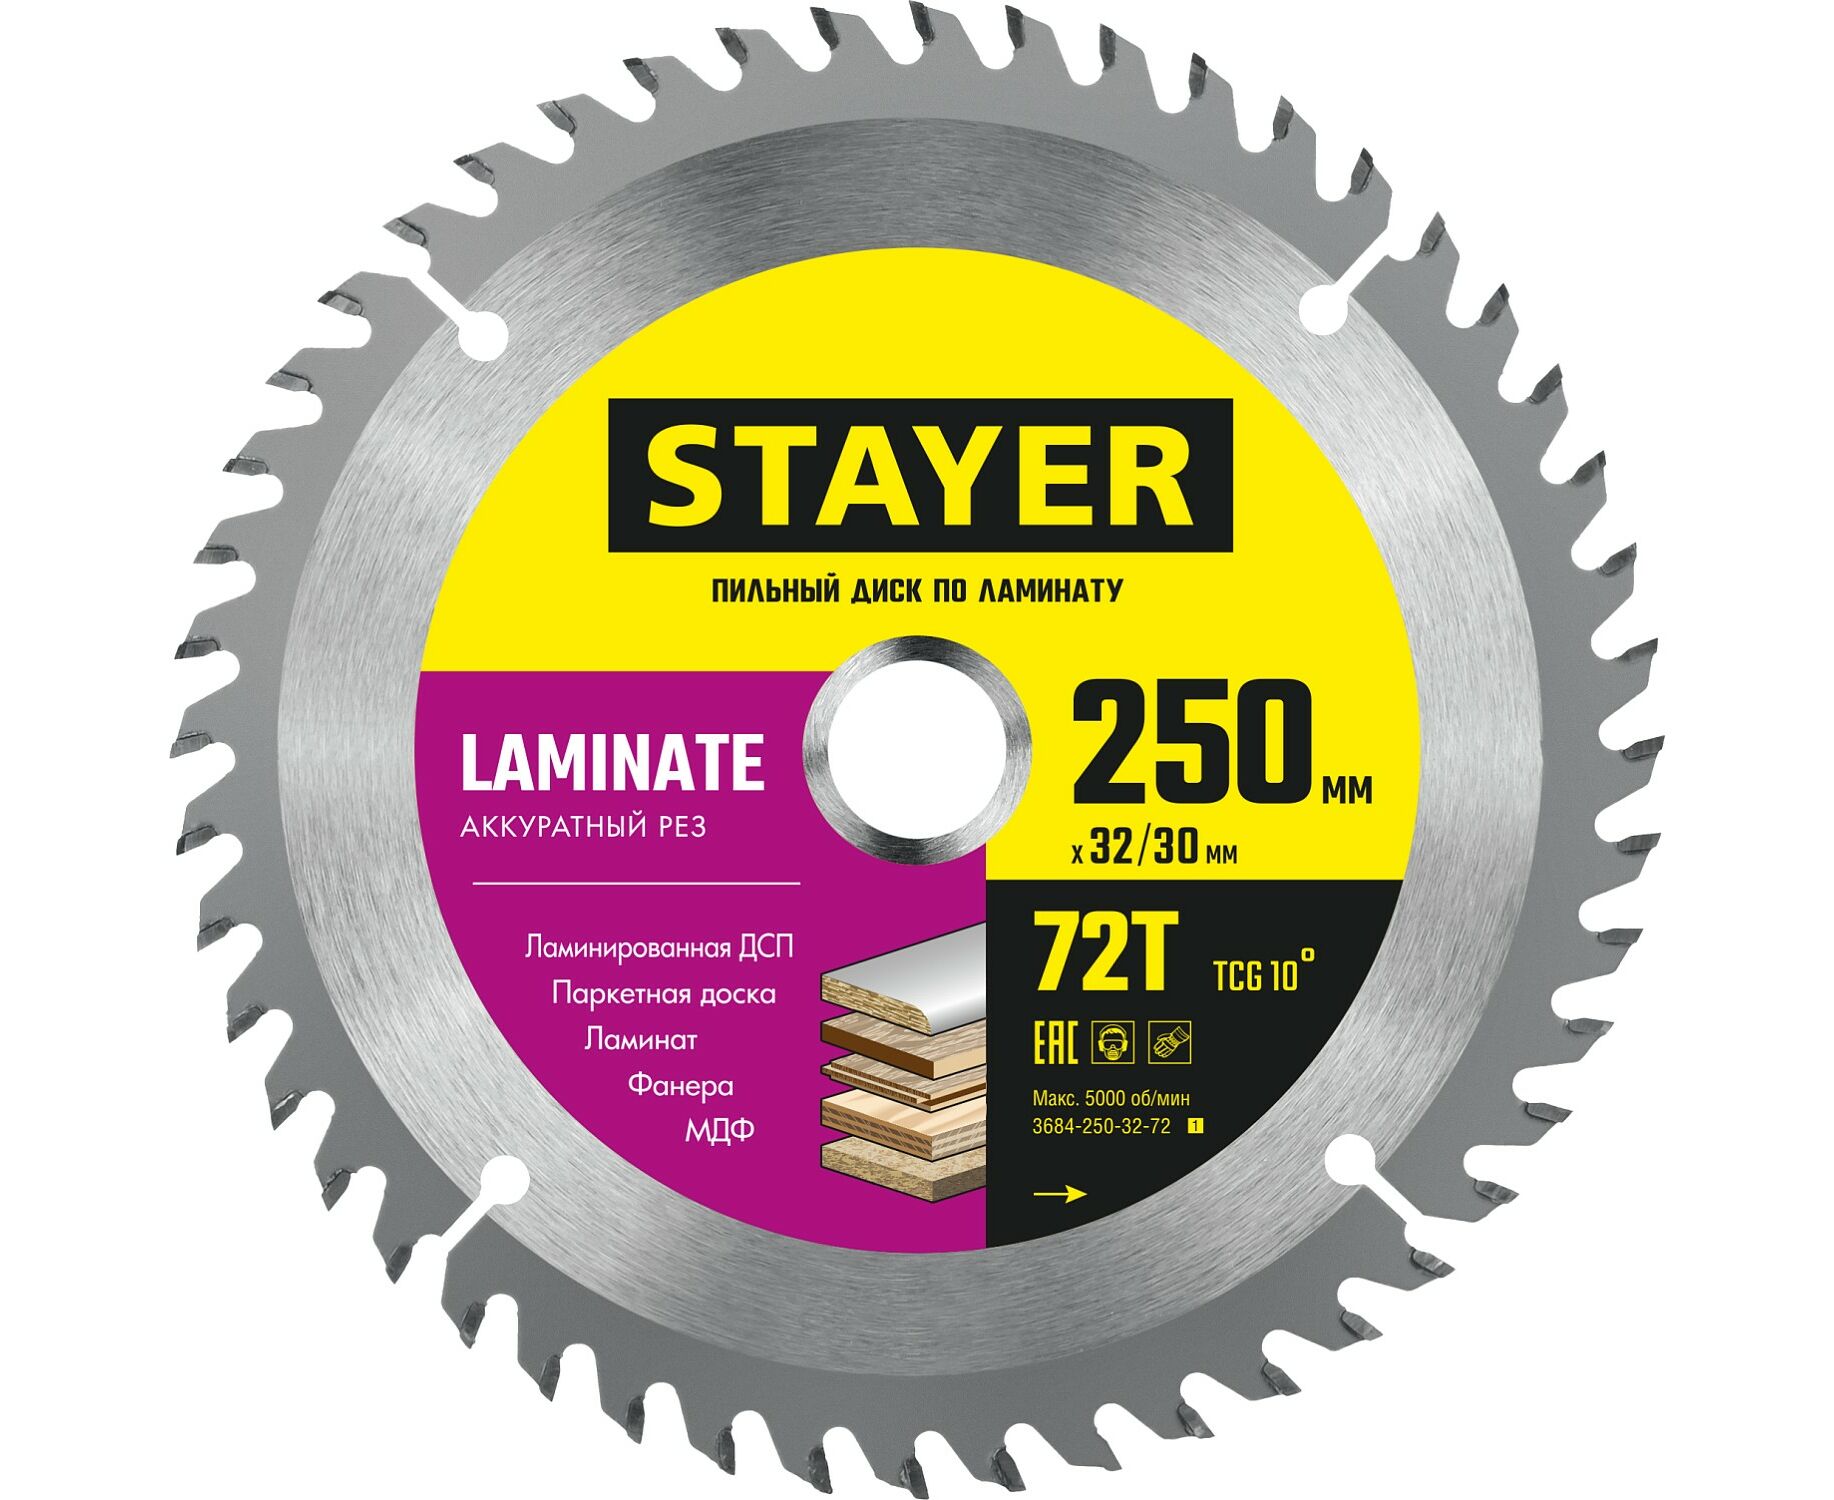 Пильный диск STAYER LAMINATE 250 x 32/30мм 72Т, по ламинату, аккуратный рез пильный диск stayer laminate 185 x 30 20мм 56t по ламинату аккуратный рез